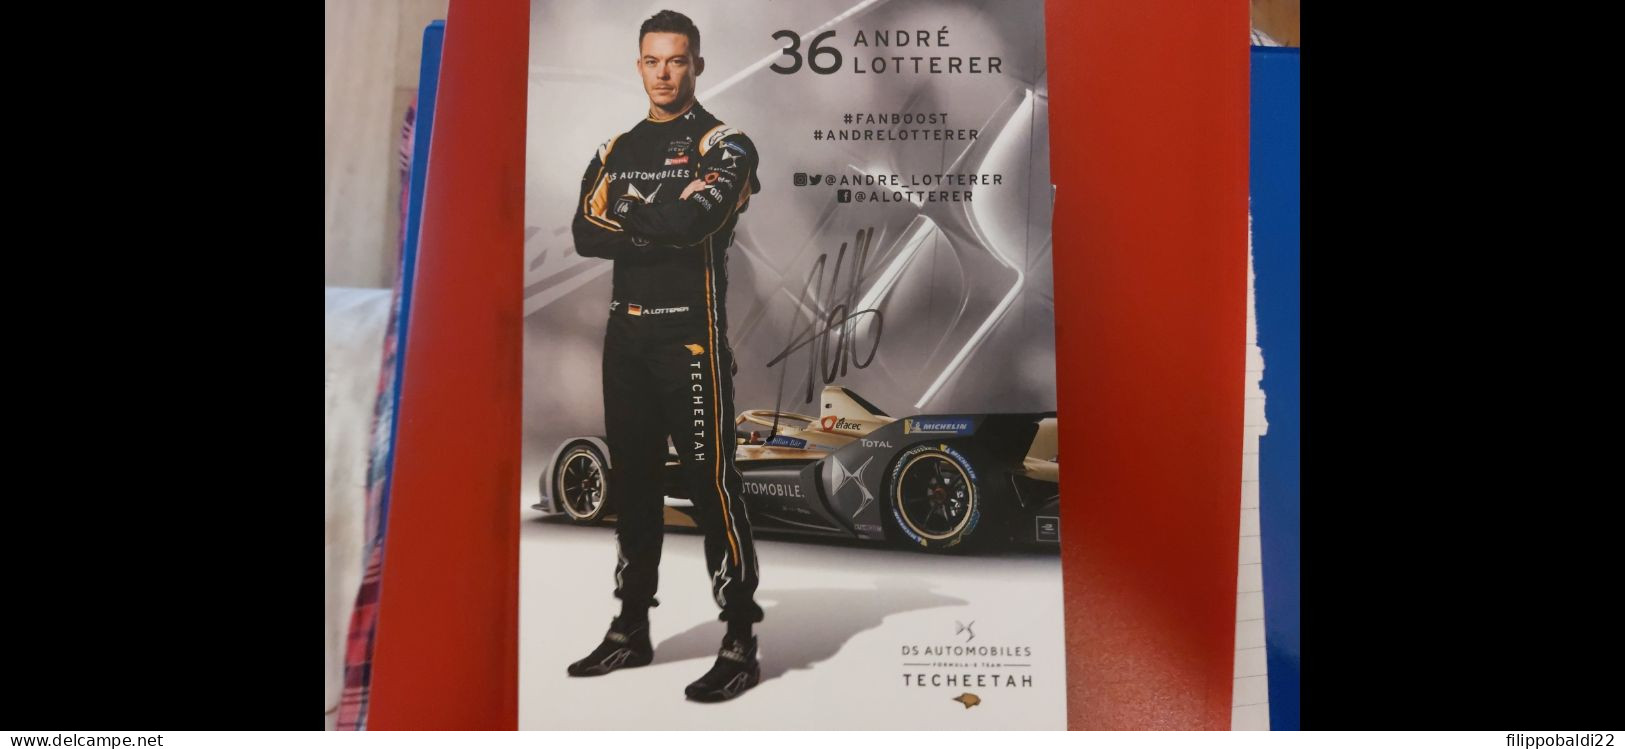 Andre Lotterer Autografo Autograph Signed - Automobile - F1